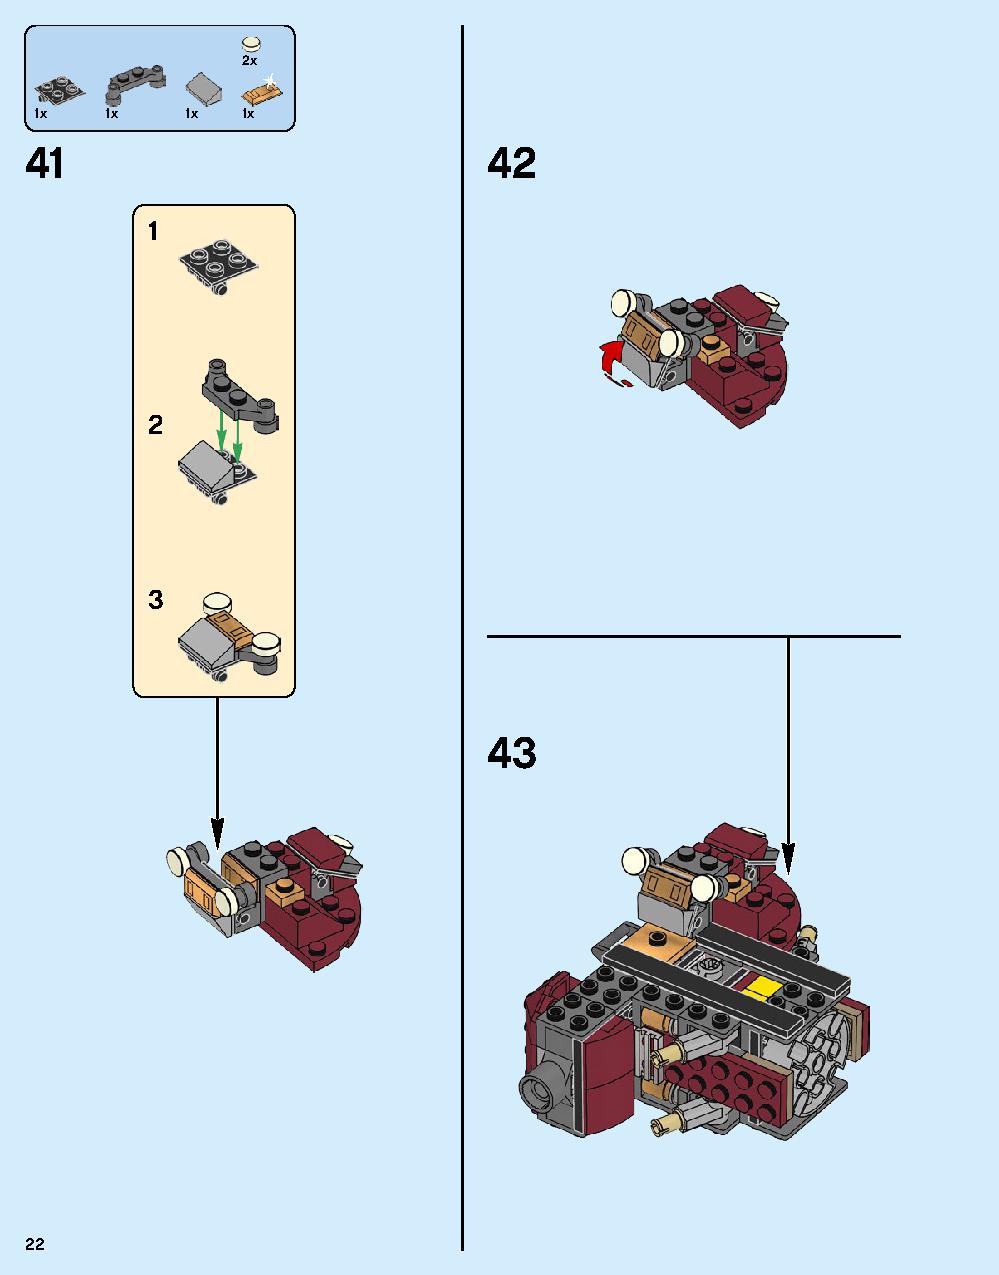 ハルクバスター：ウルトロン・エディション 76105 レゴの商品情報 レゴの説明書・組立方法 22 page